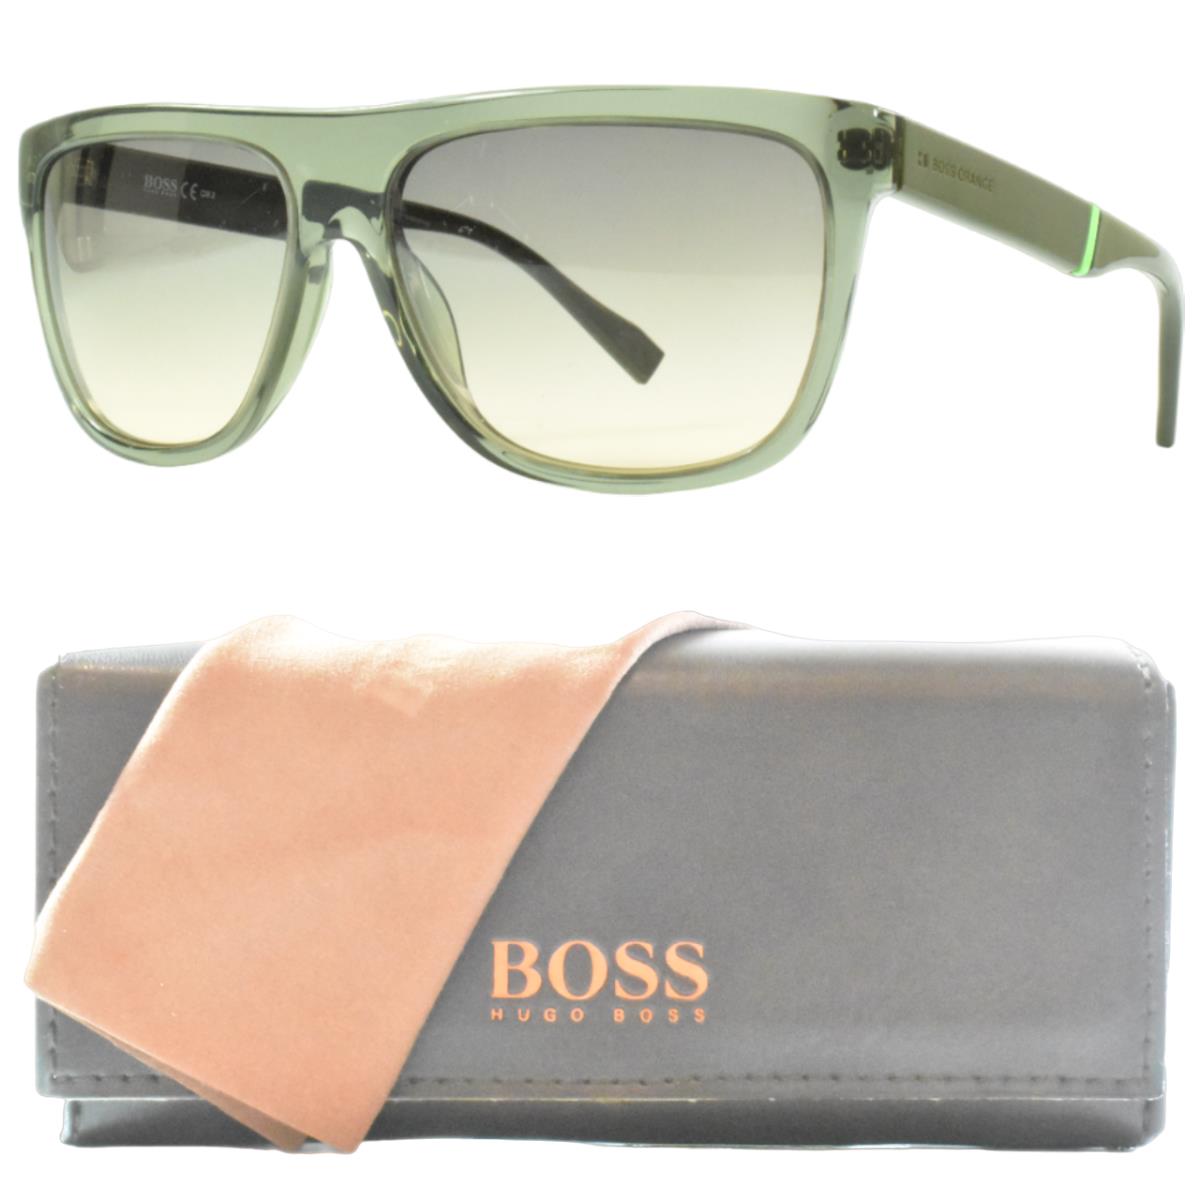 Hugo Boss BO 0134/S 1QJFI Rectangle Full Rim Unisex Green Sunglasses - Frame: Green, Lens: Brown